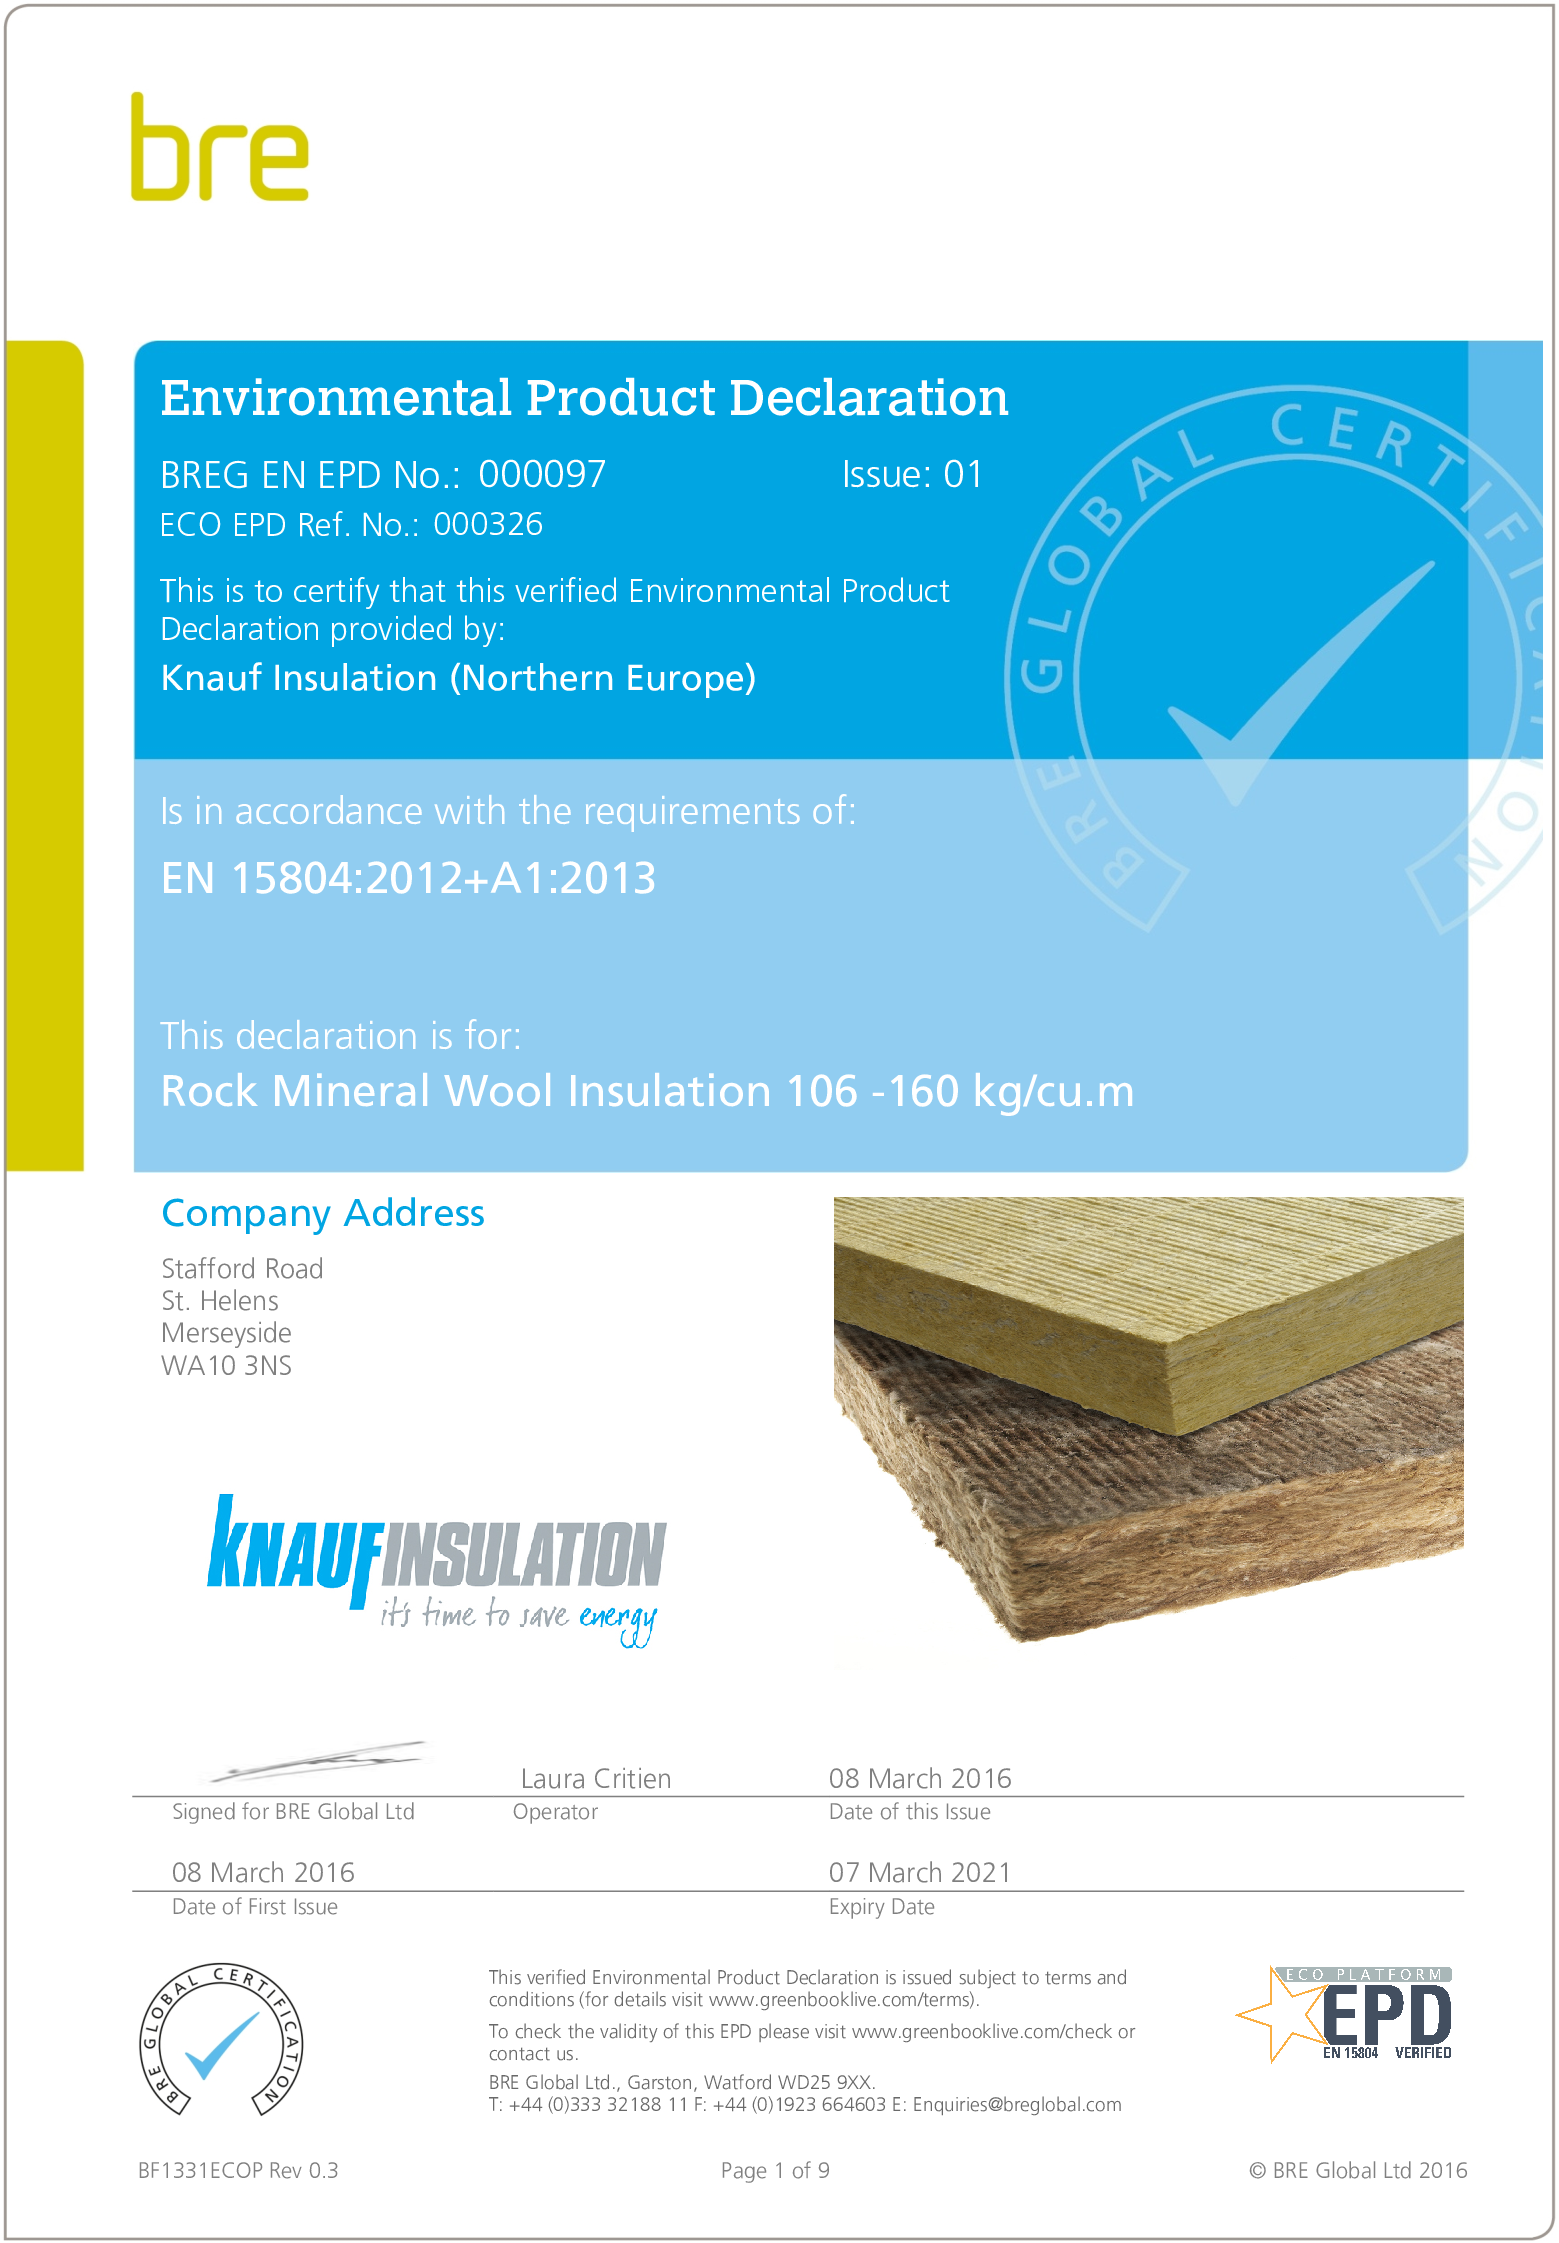 RMW Insulation 106 -160 kg/cu.m